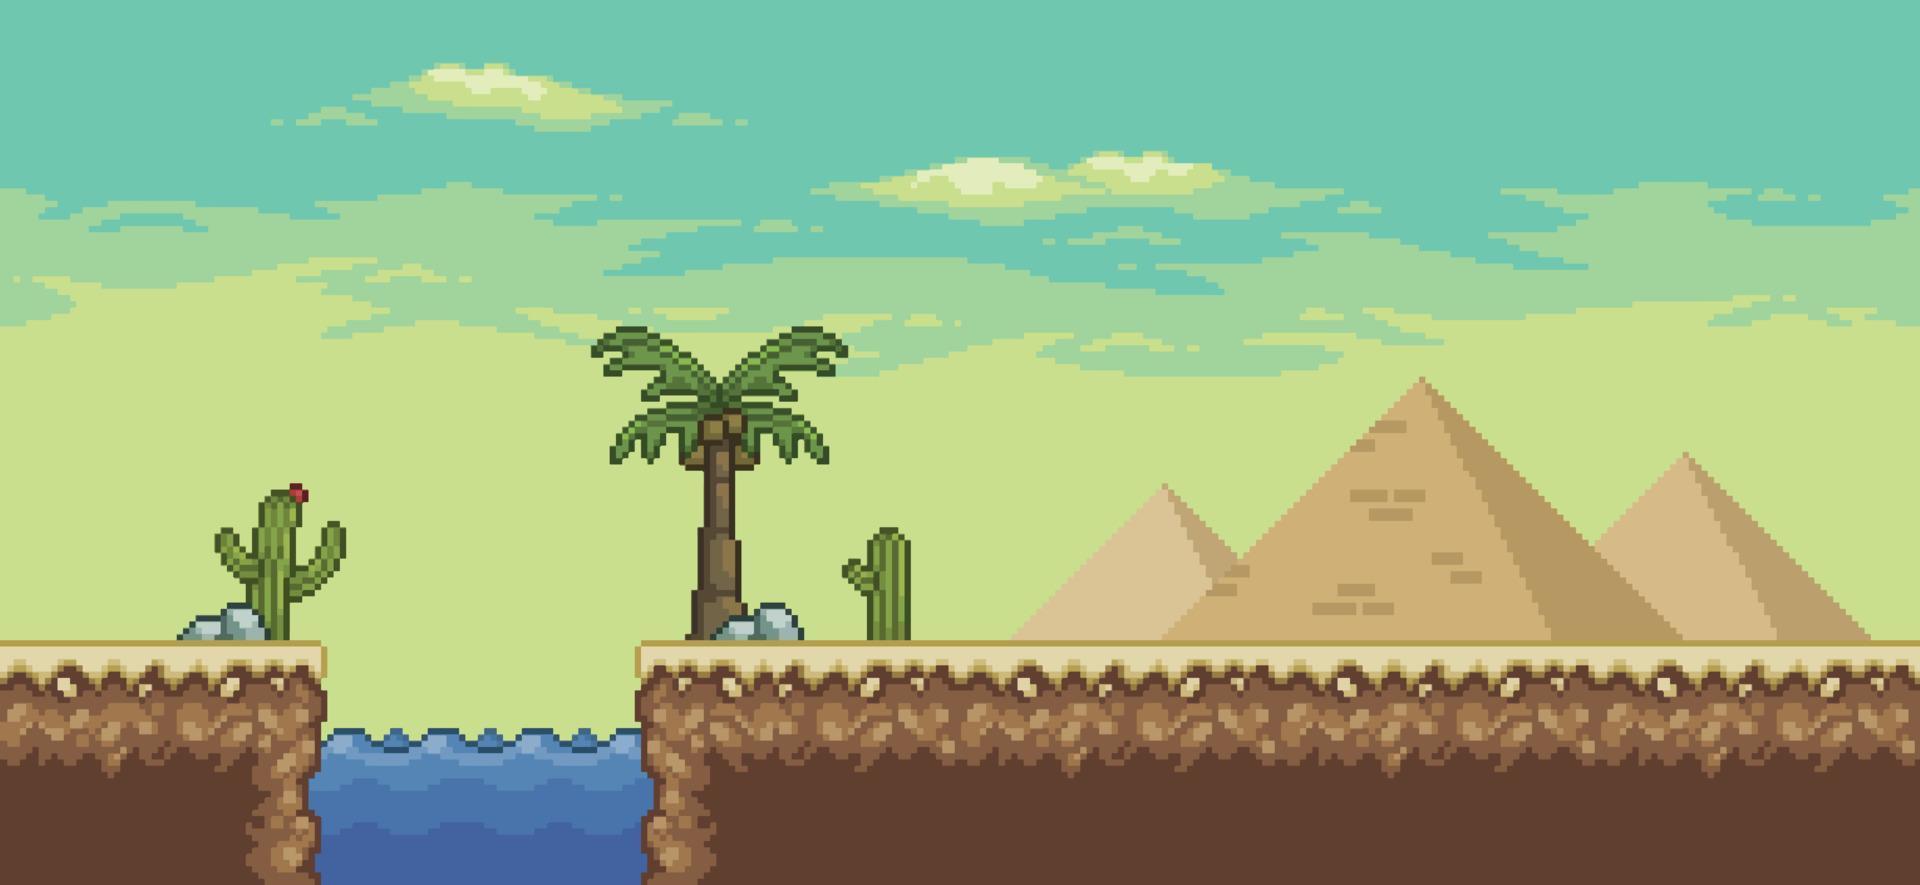 scène de jeu pixel art désert avec pyramide, palmier, oasis, fond de paysage de cactus 8 bits vecteur